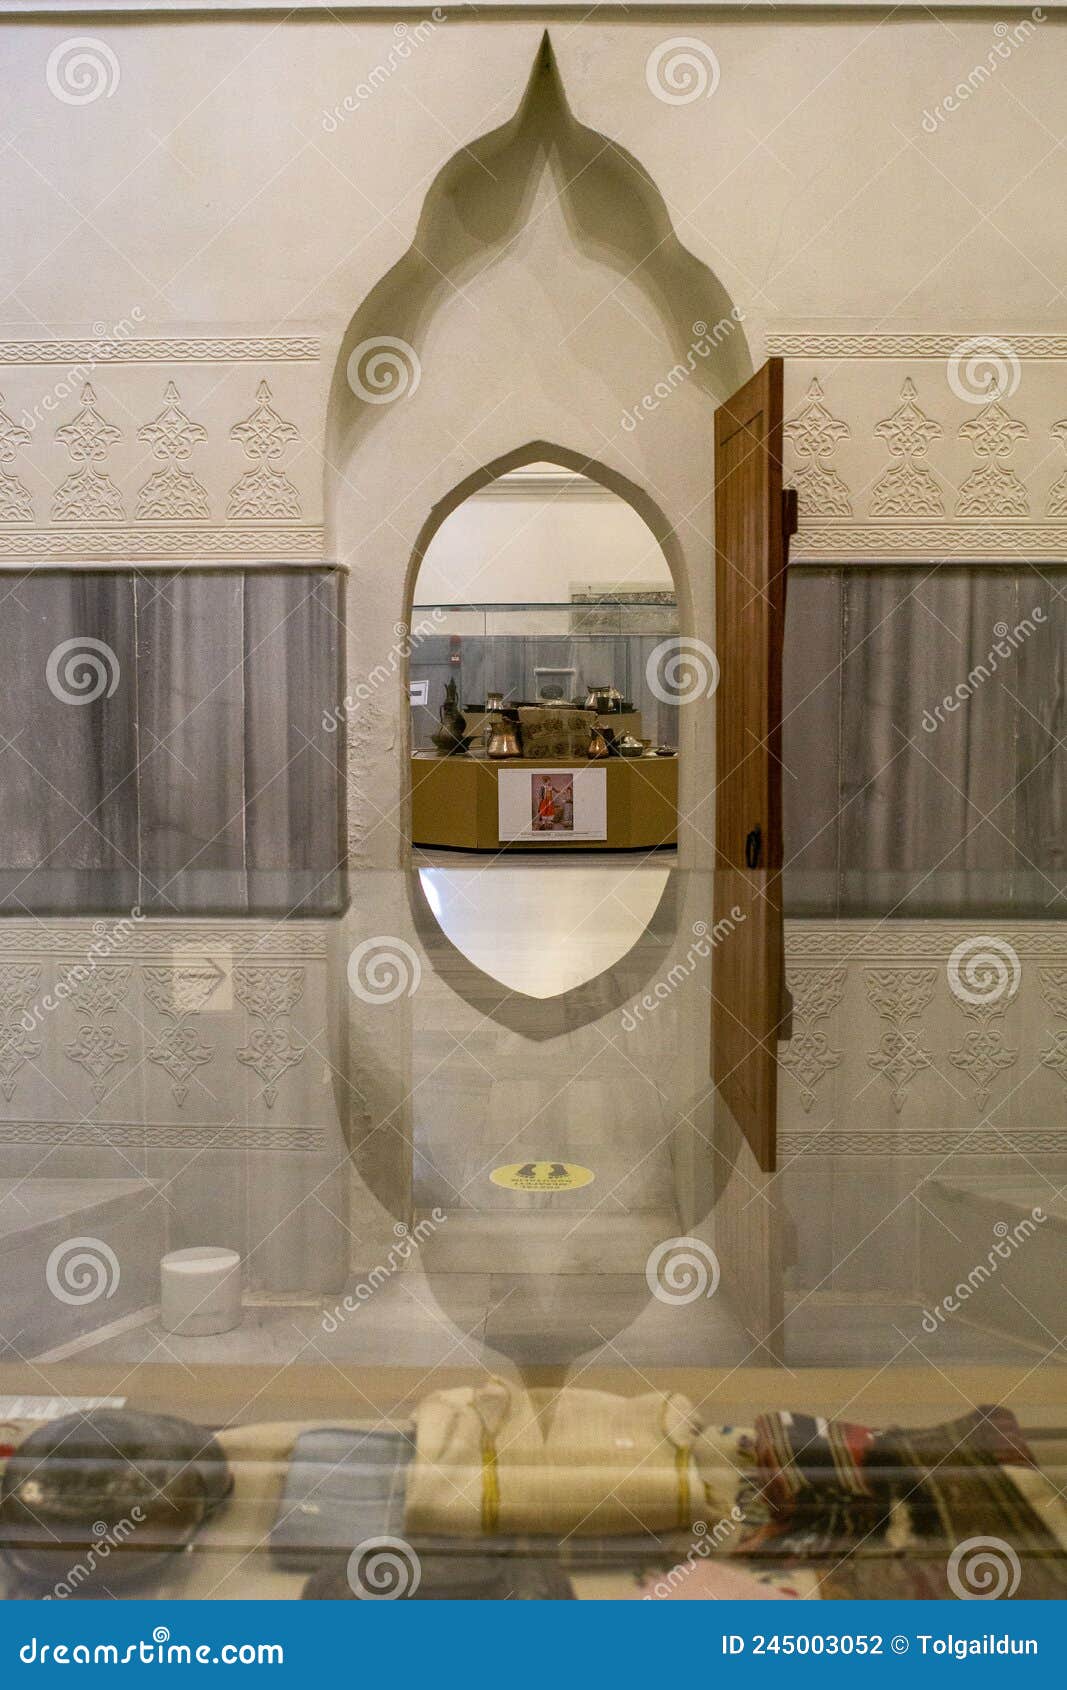 Vistas Interiores Detalladas Desde Baño De Bayezid El Museo De Cultura Bayezid Ii Hamam En Fatih Turquía Estambul Fotografía editorial - Imagen de edificio, azul: 245003052